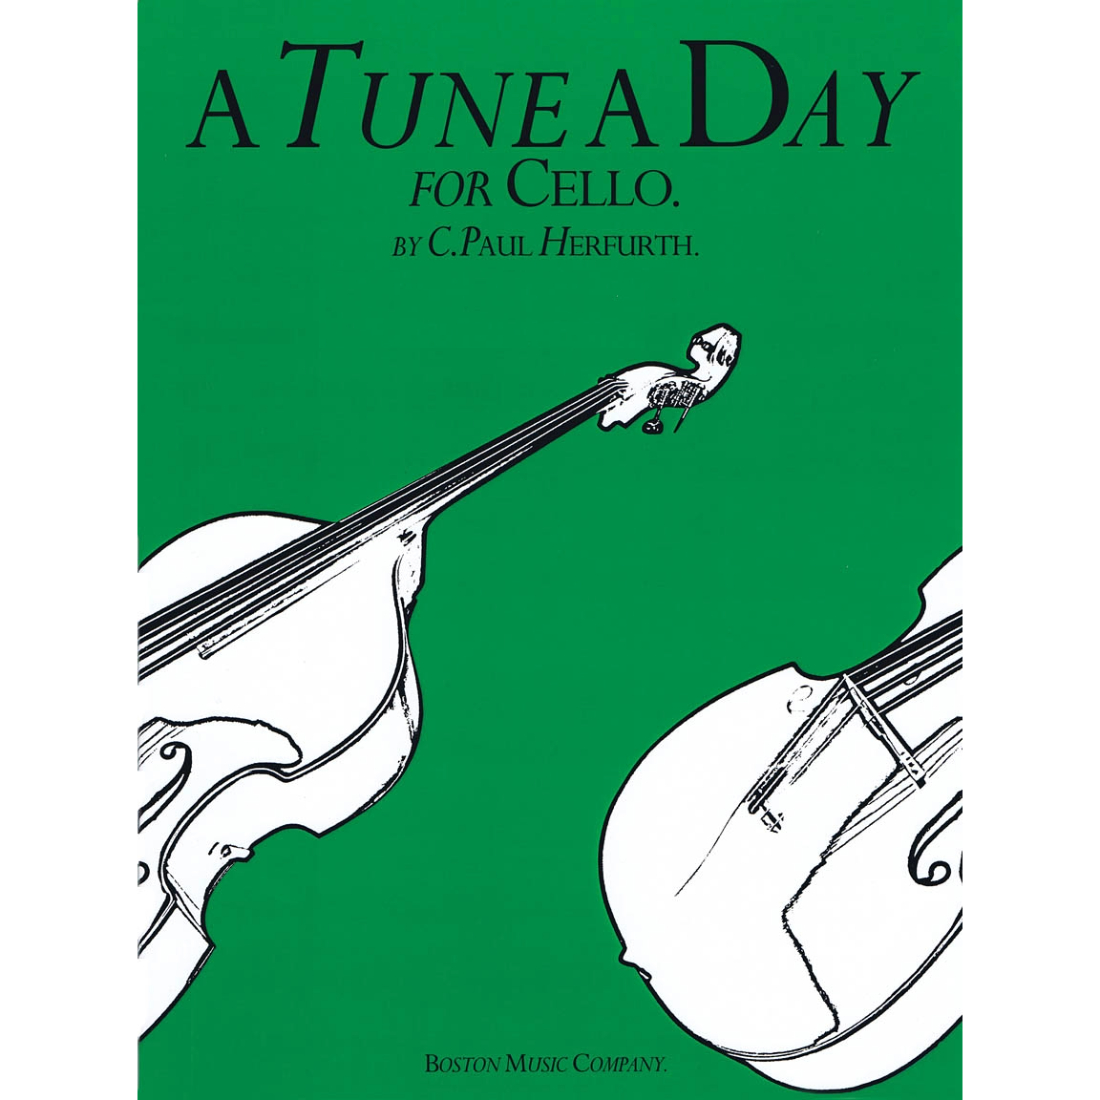 Dark green "A Tune A Day" cello method book with black and white drawn cello